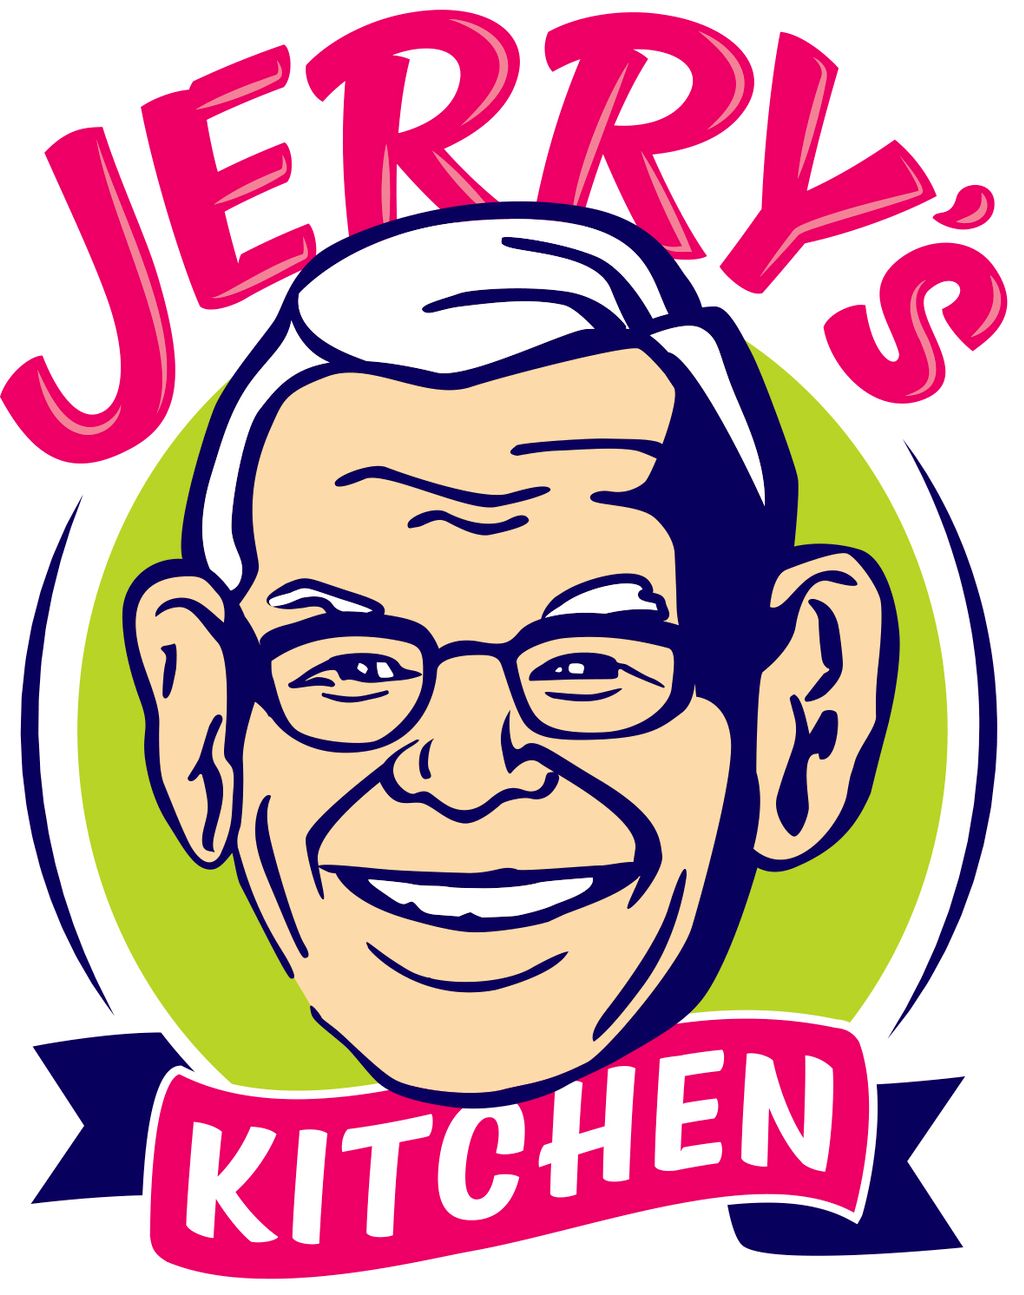 Jerry's Kitchen, FL